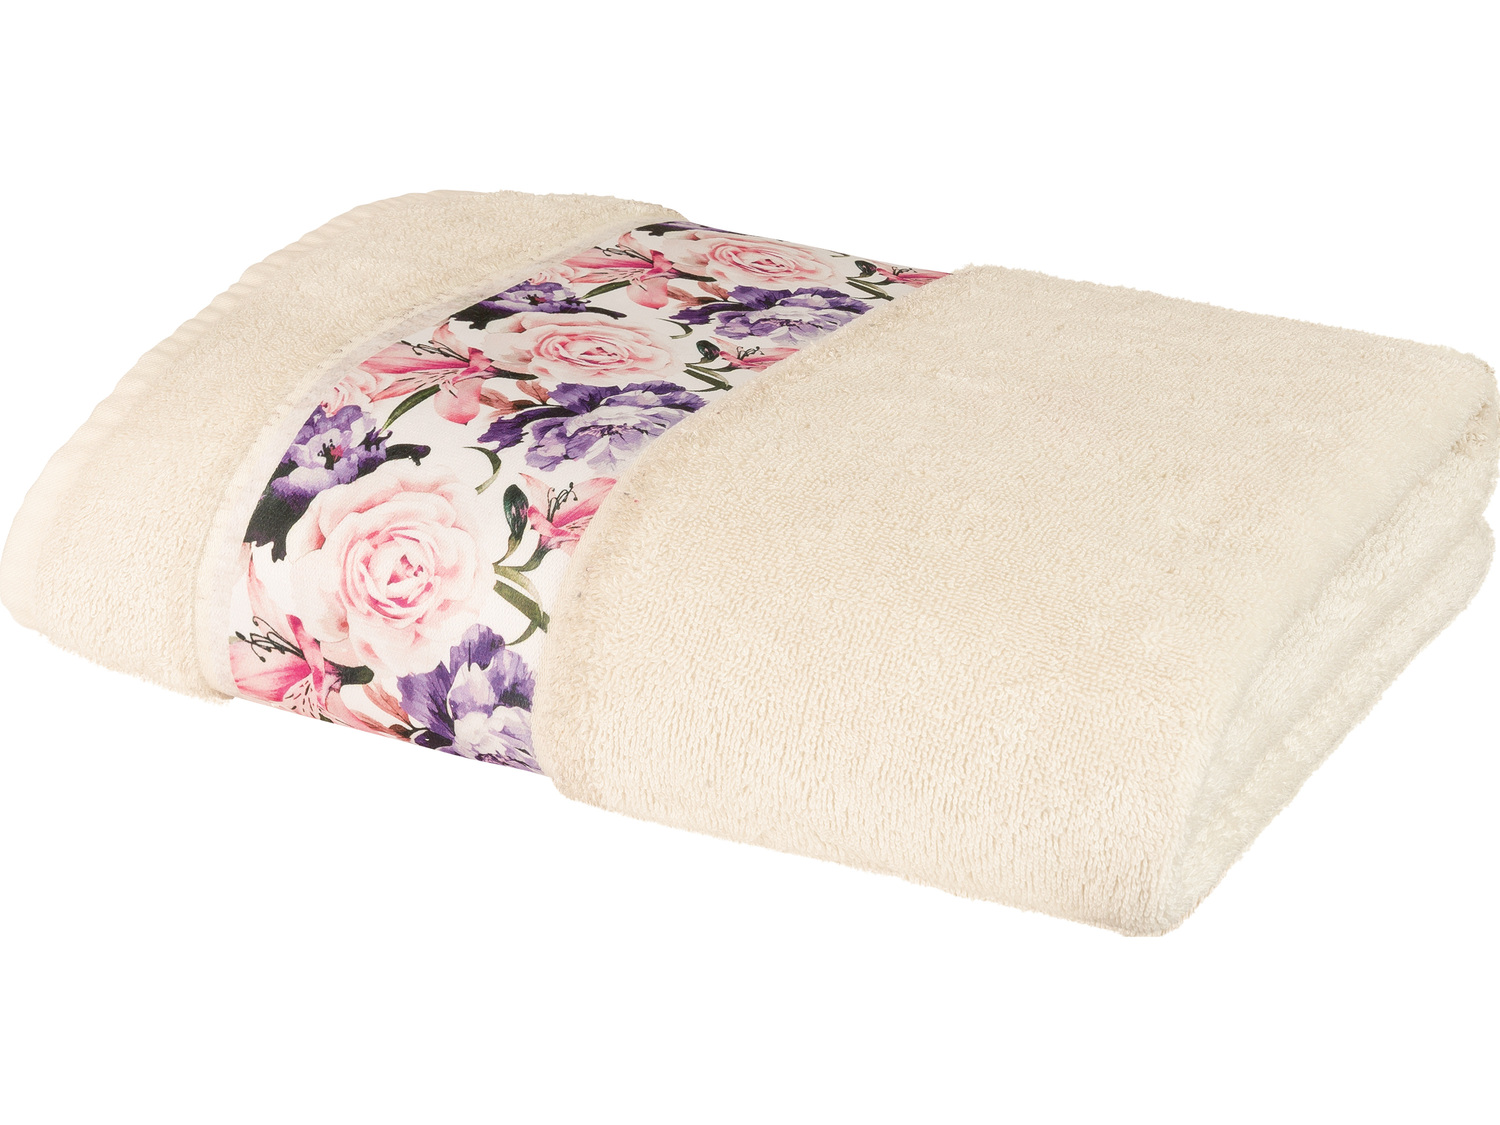 Ręcznik frotté 100 x 150 cm Miomare, cena 39,99 PLN 
- 50% bawełny, 50% wiskozy ...